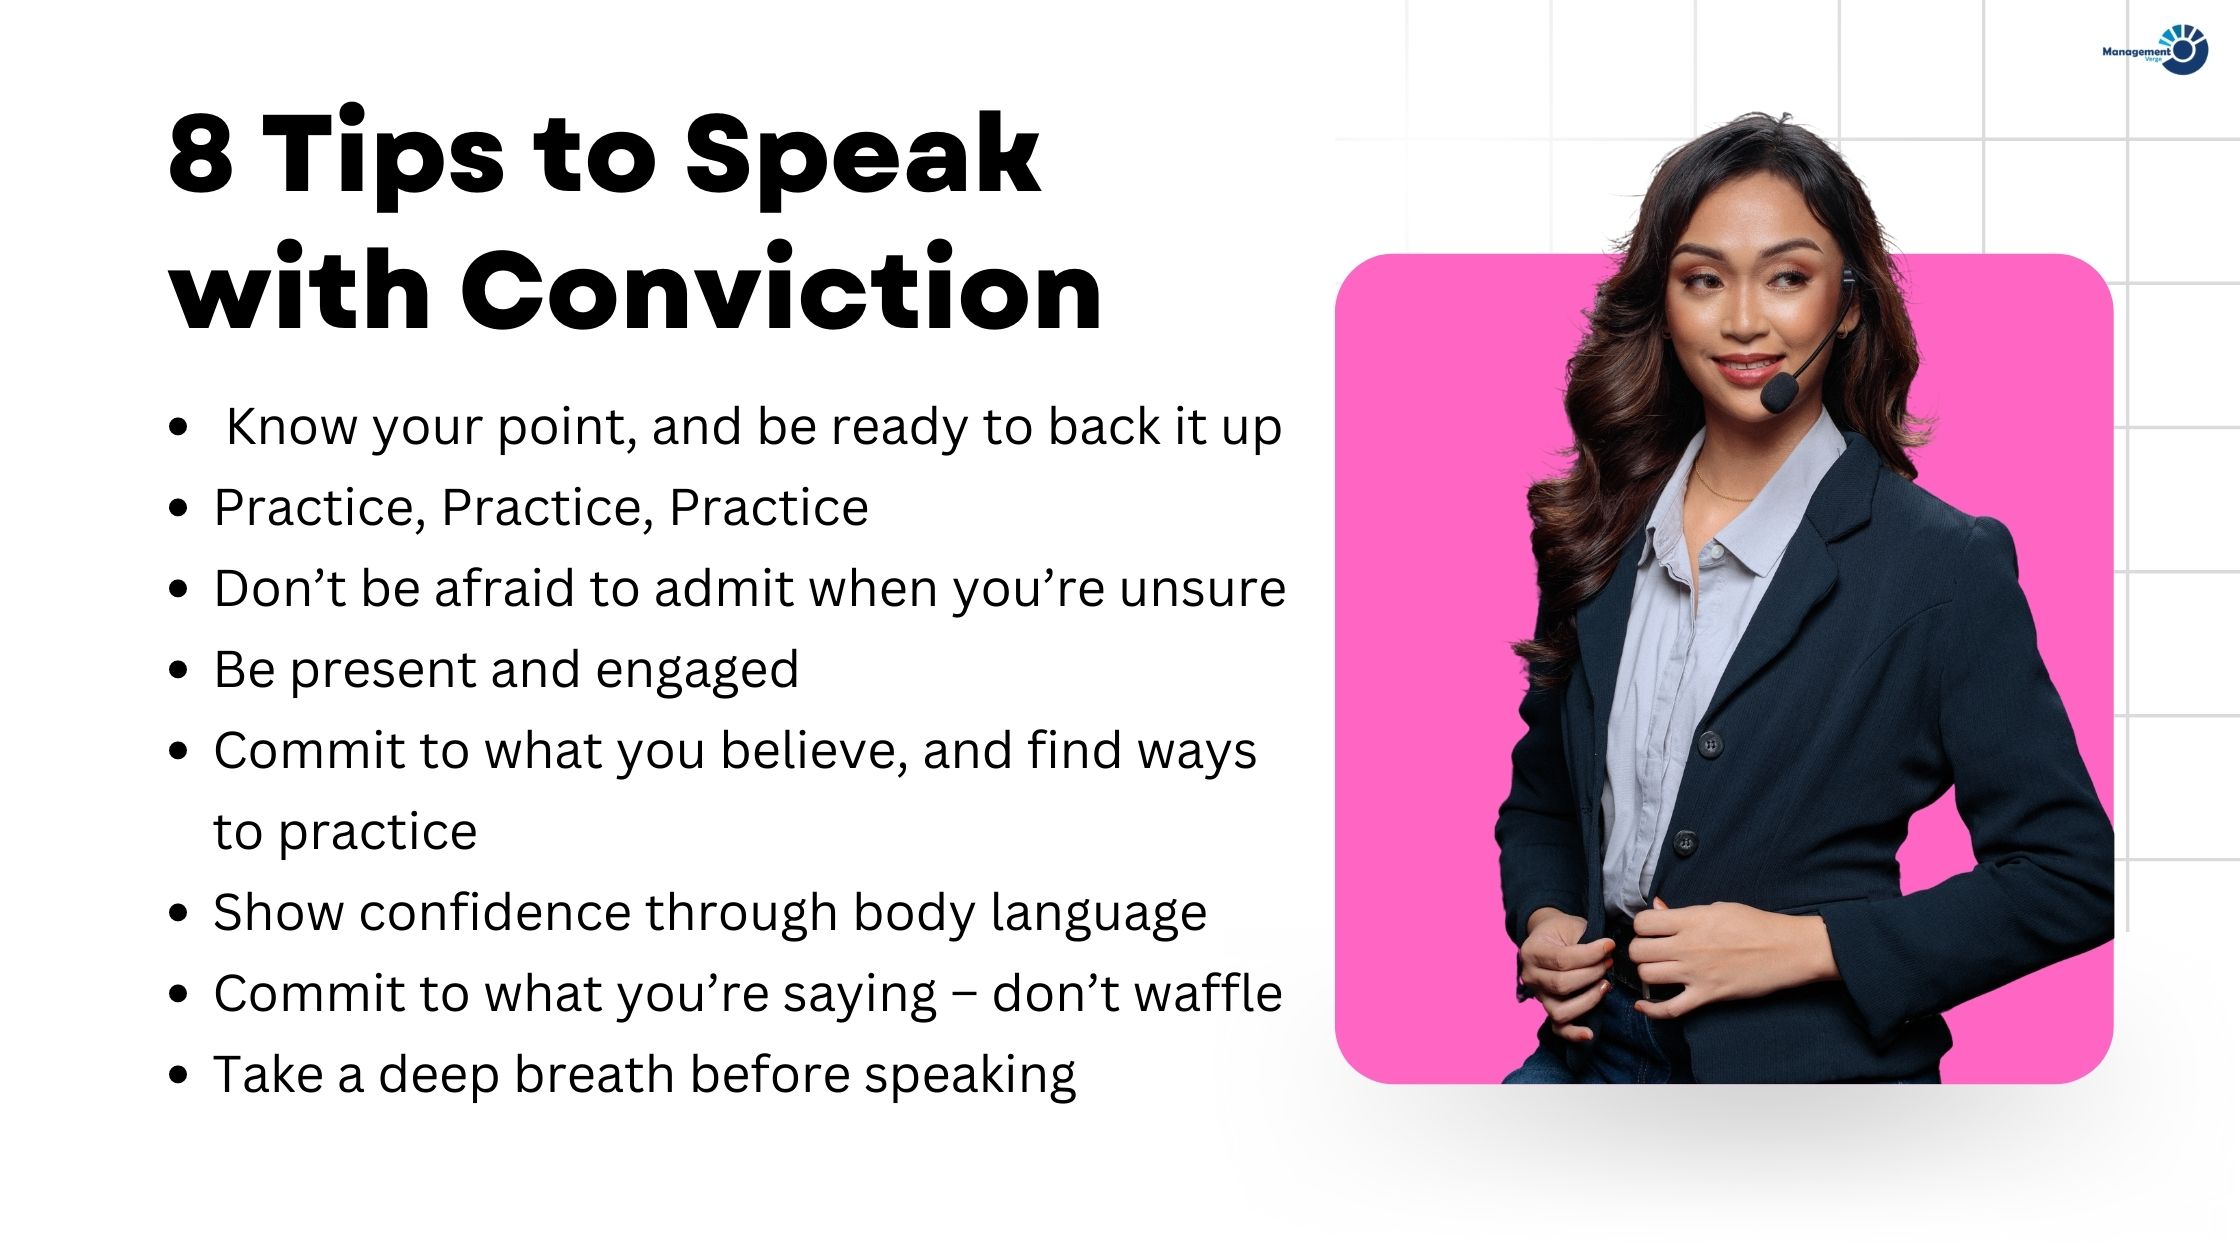 Speak with Conviction